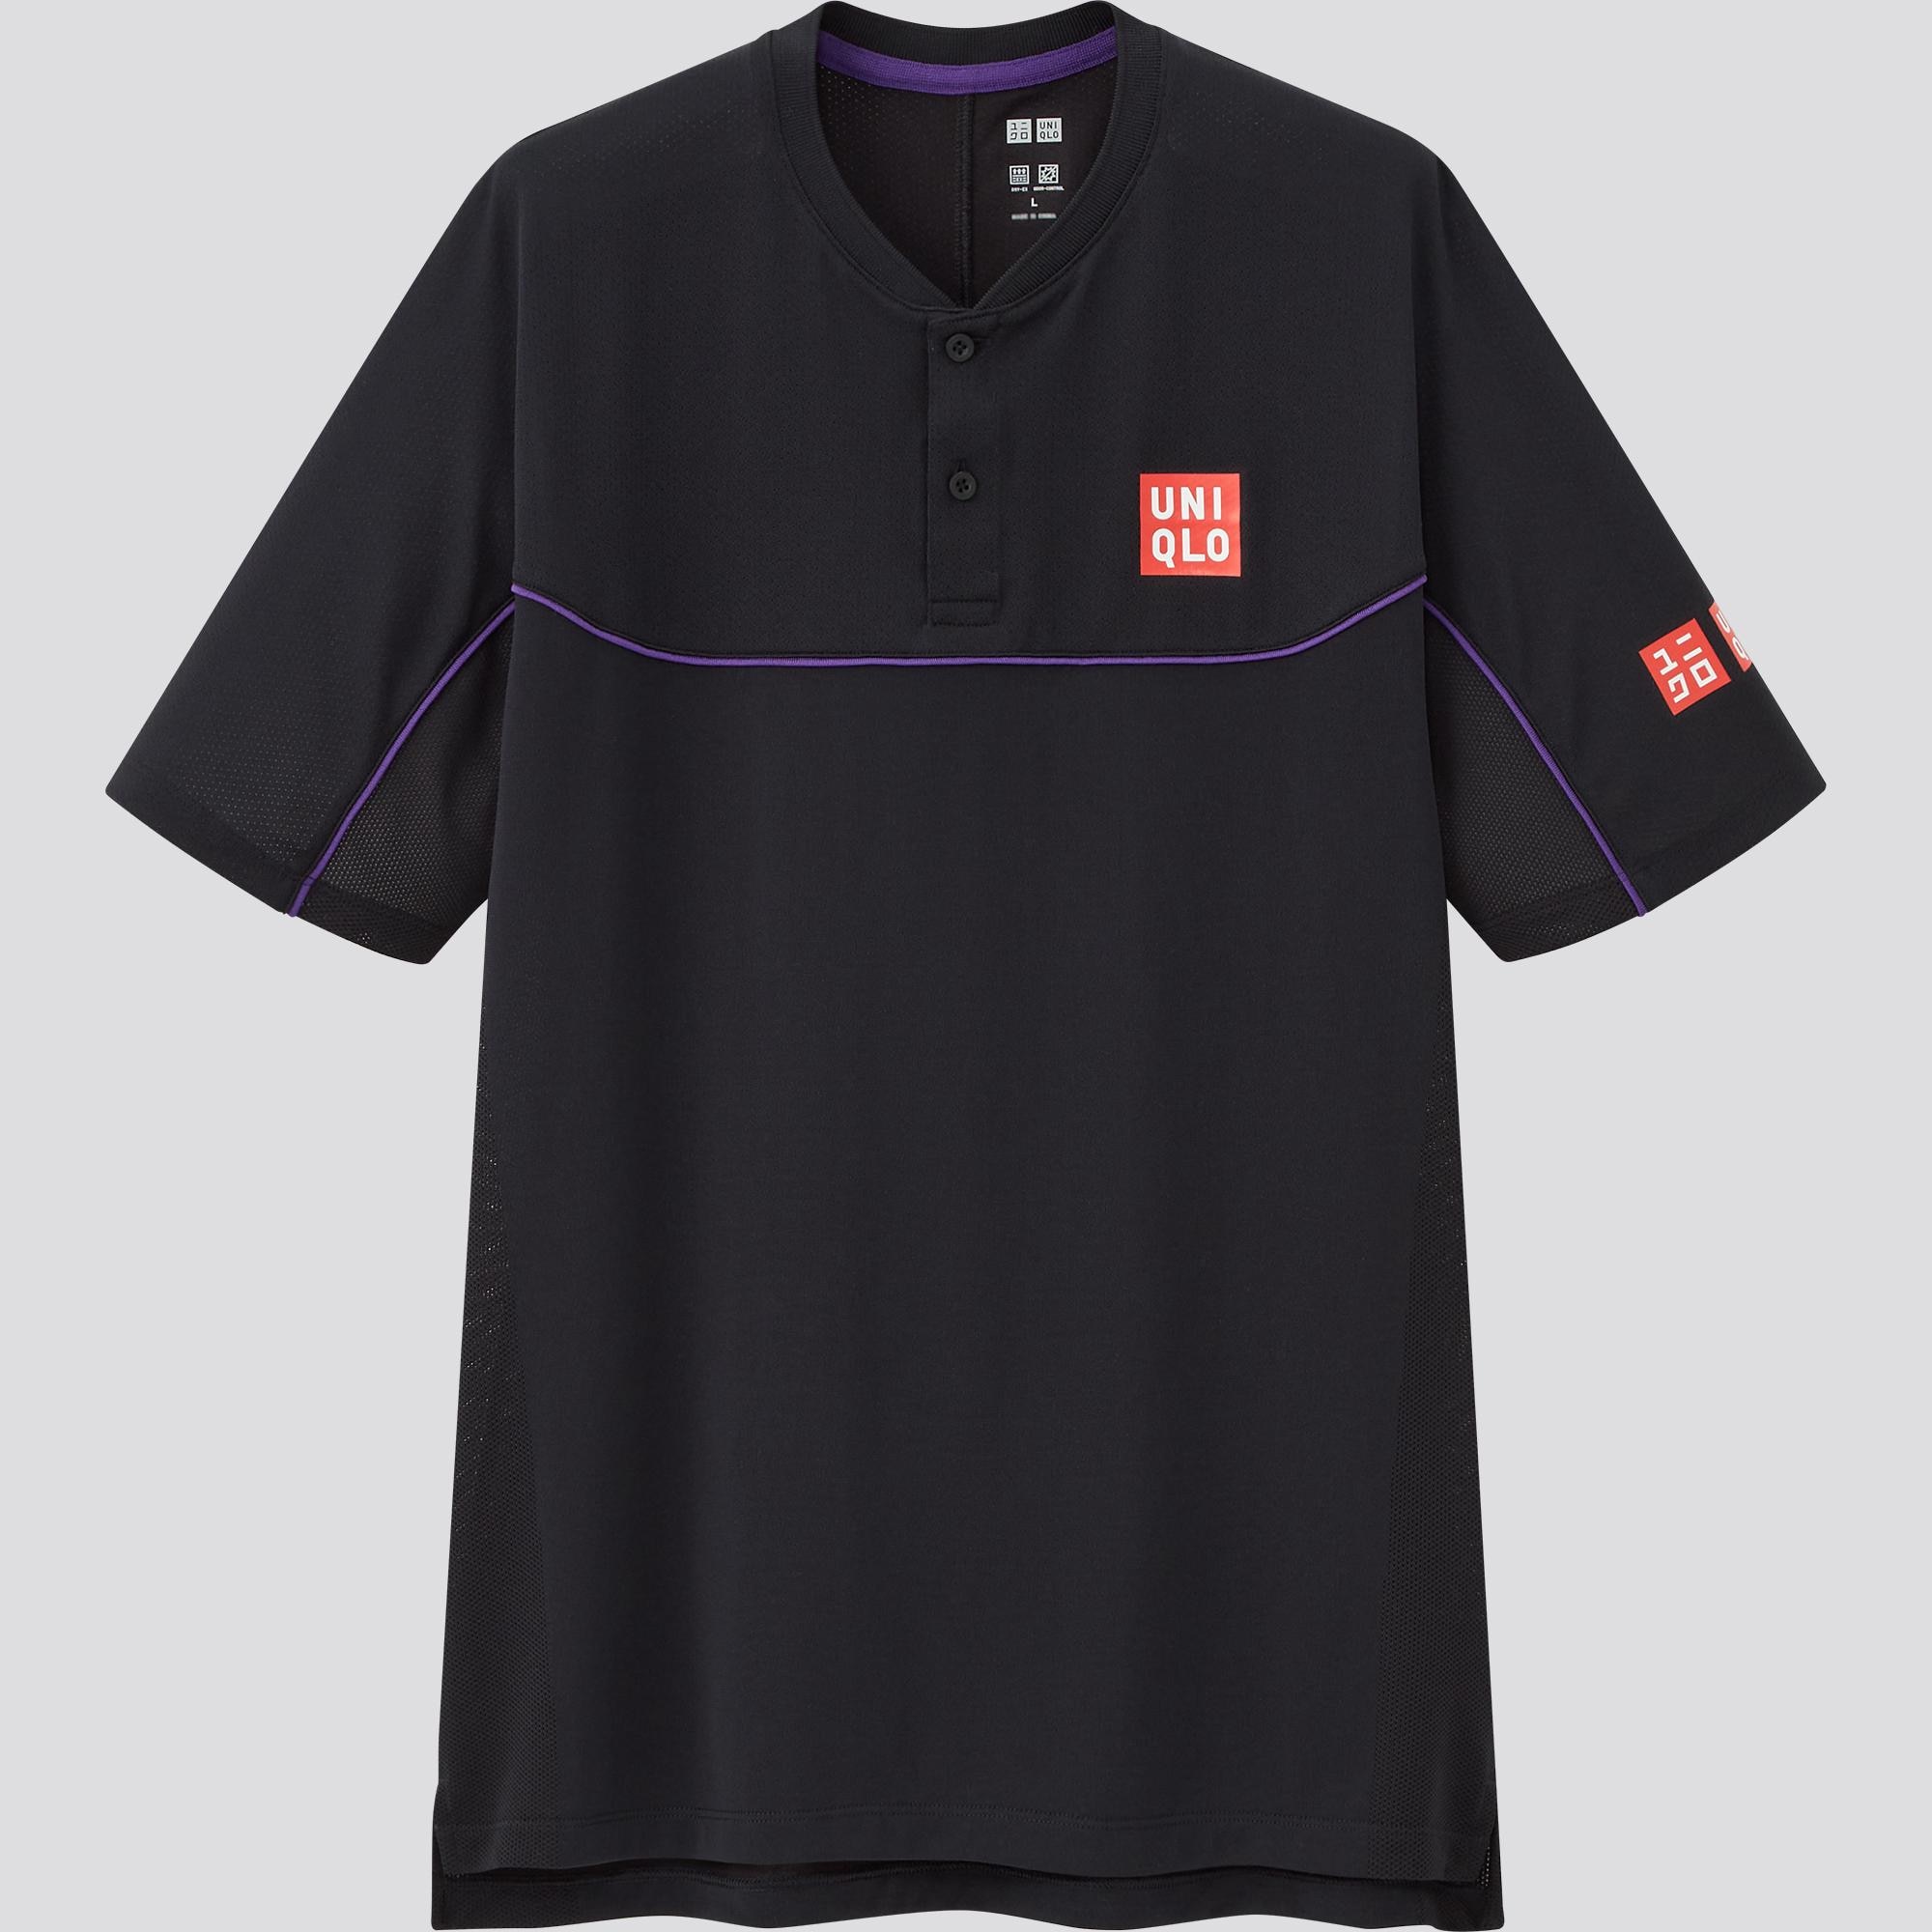 ユニクロ RF ドライ ポロシャツ ショートパンツ 黒 紫 M - ウェア